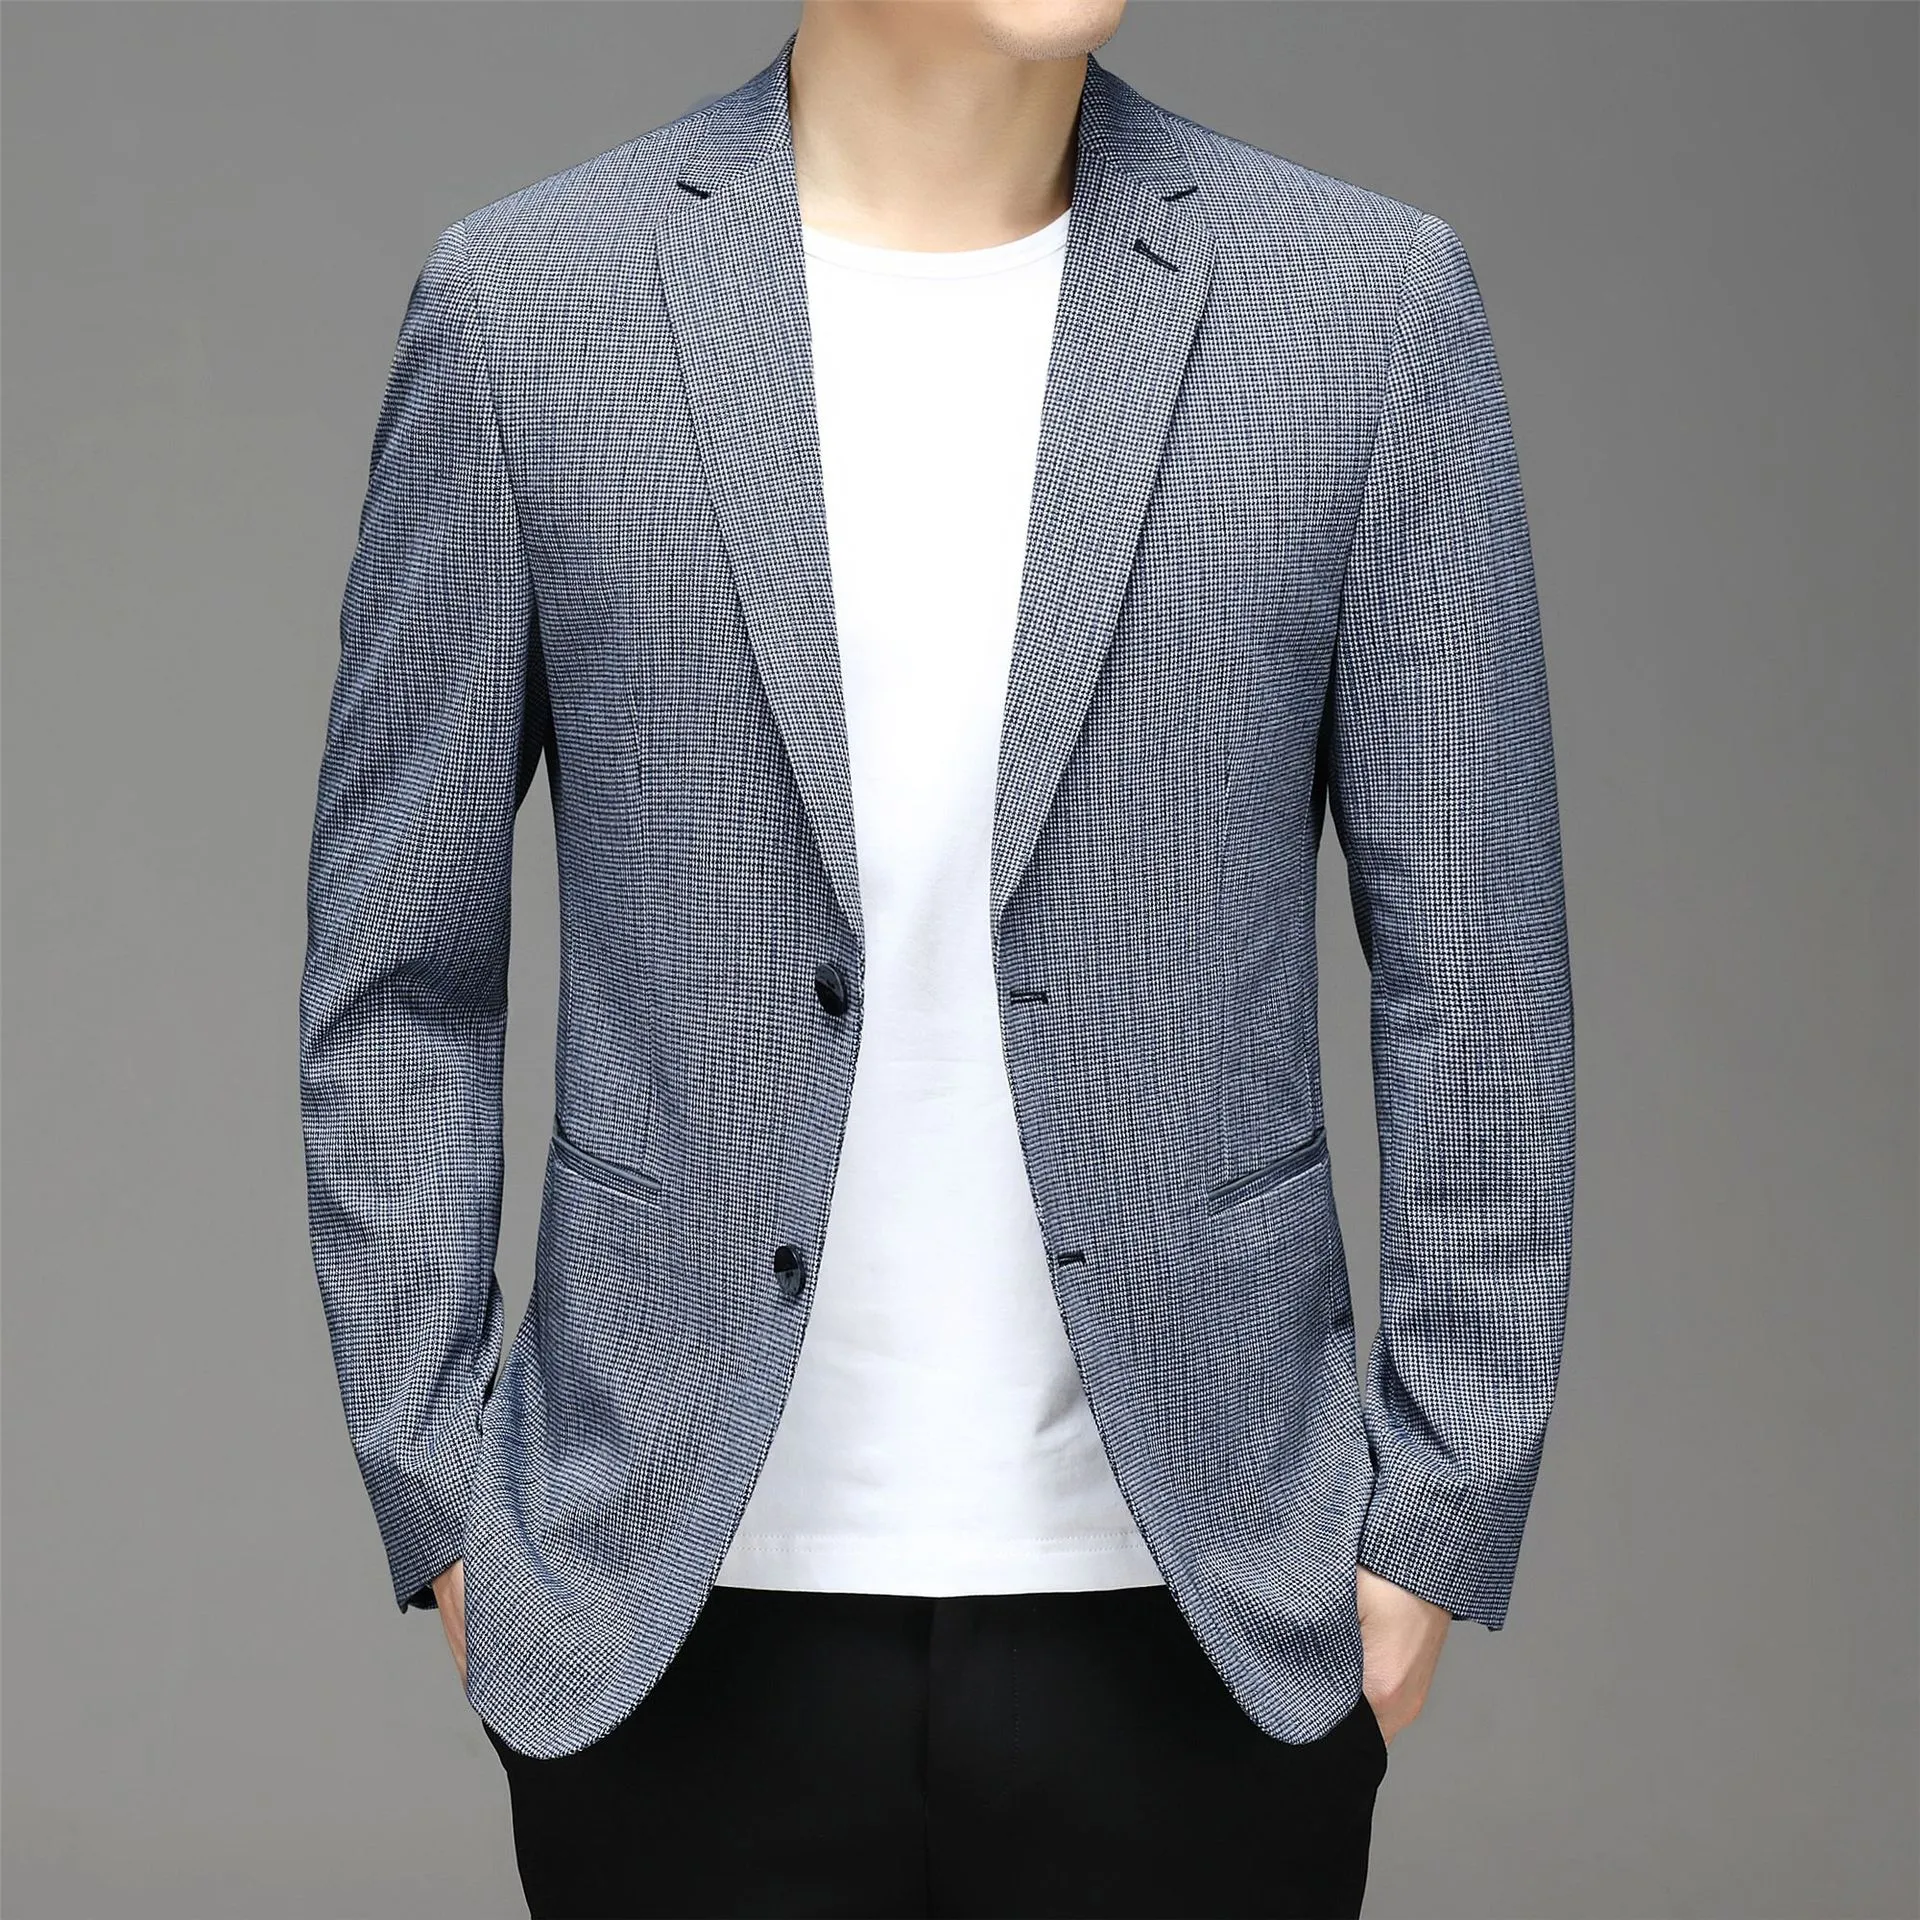 Primavera nuovo vestito da uomo stile coreano plaid non ferro casual piccolo vestito giacca marea commercio estero abbigliamento maschile